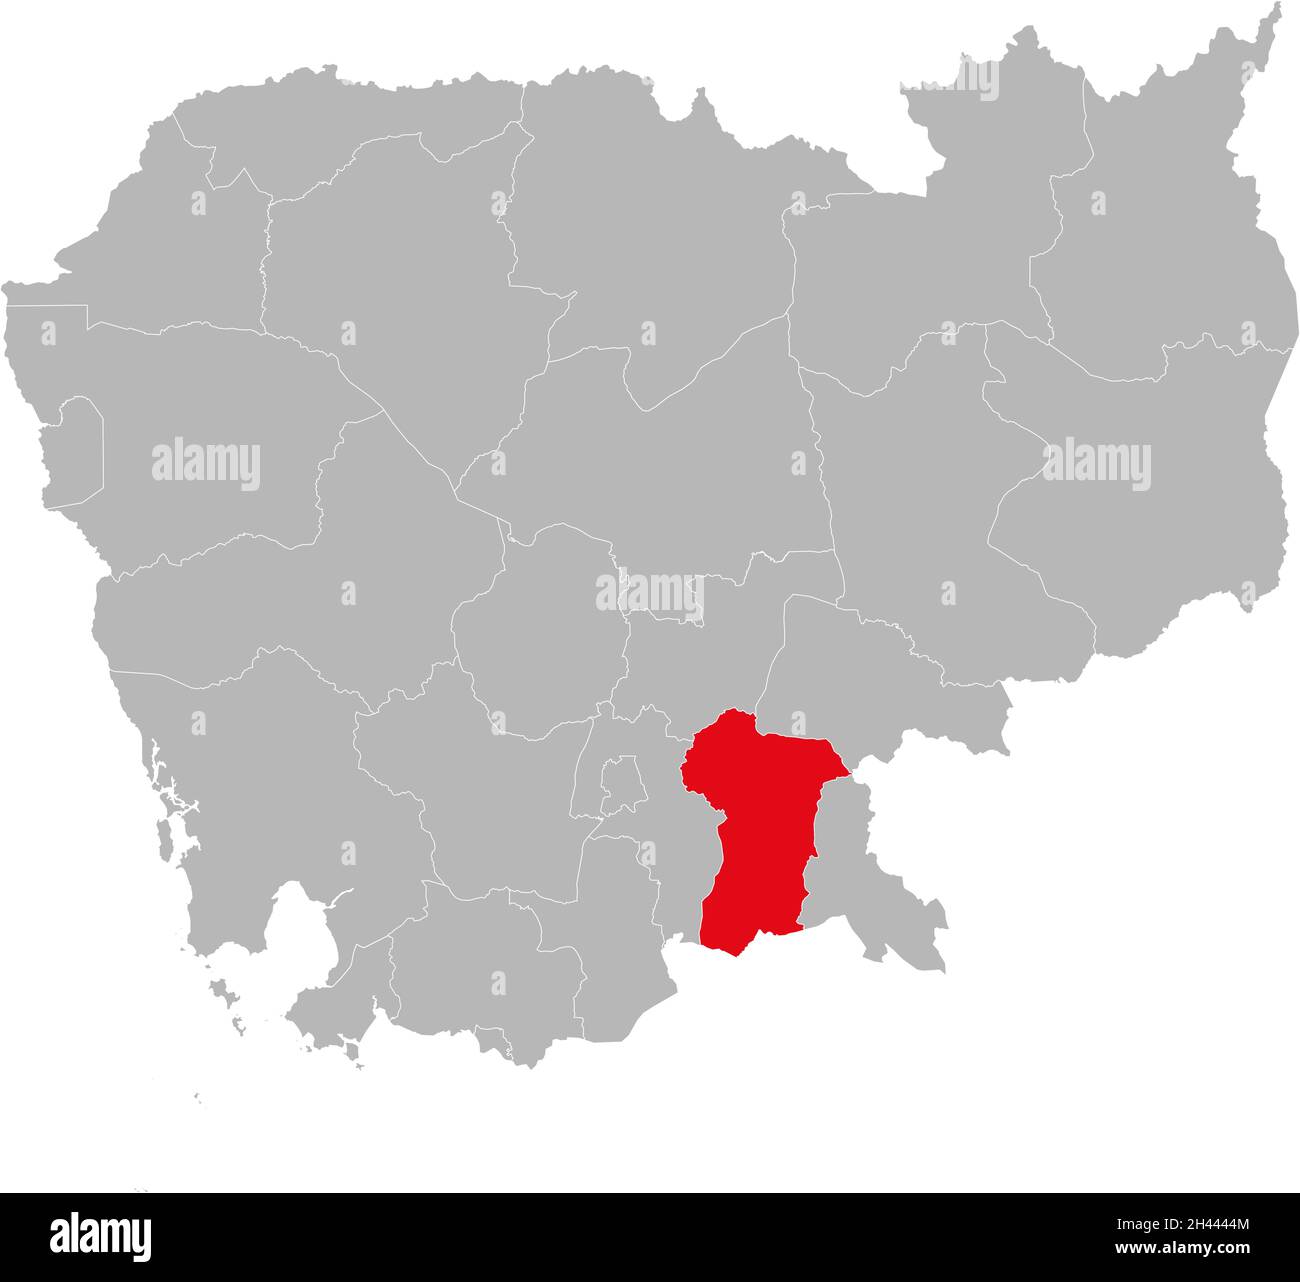 Prey Veng Province isolierte kambodschanische Landkarte. Grauer Hintergrund. Geschäftskonzepte und -Hintergründe. Stock Vektor